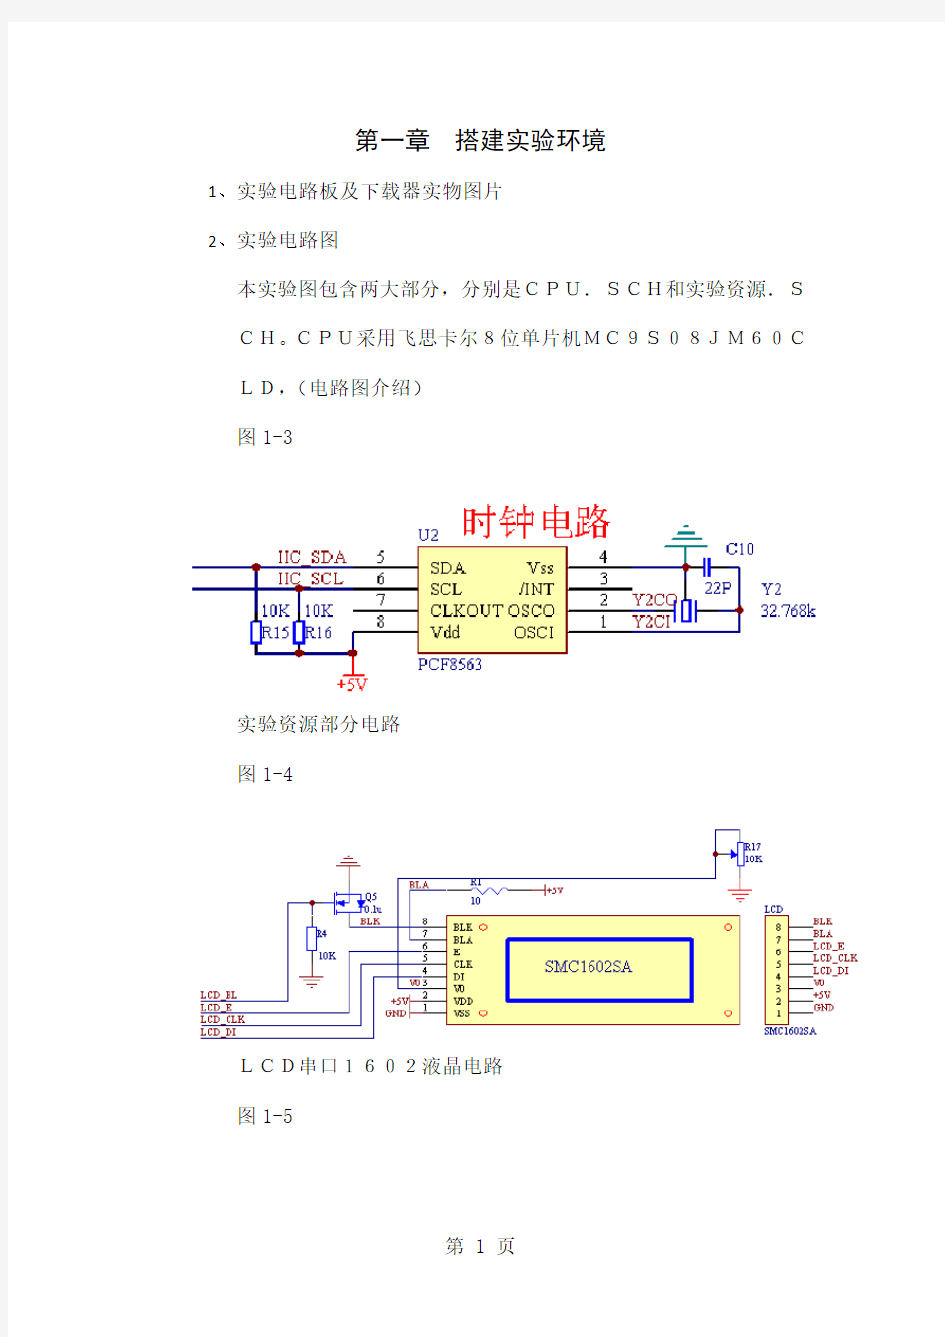 1飞思卡尔8位单片机MC9S08JM60开发板实践教程-60页word资料